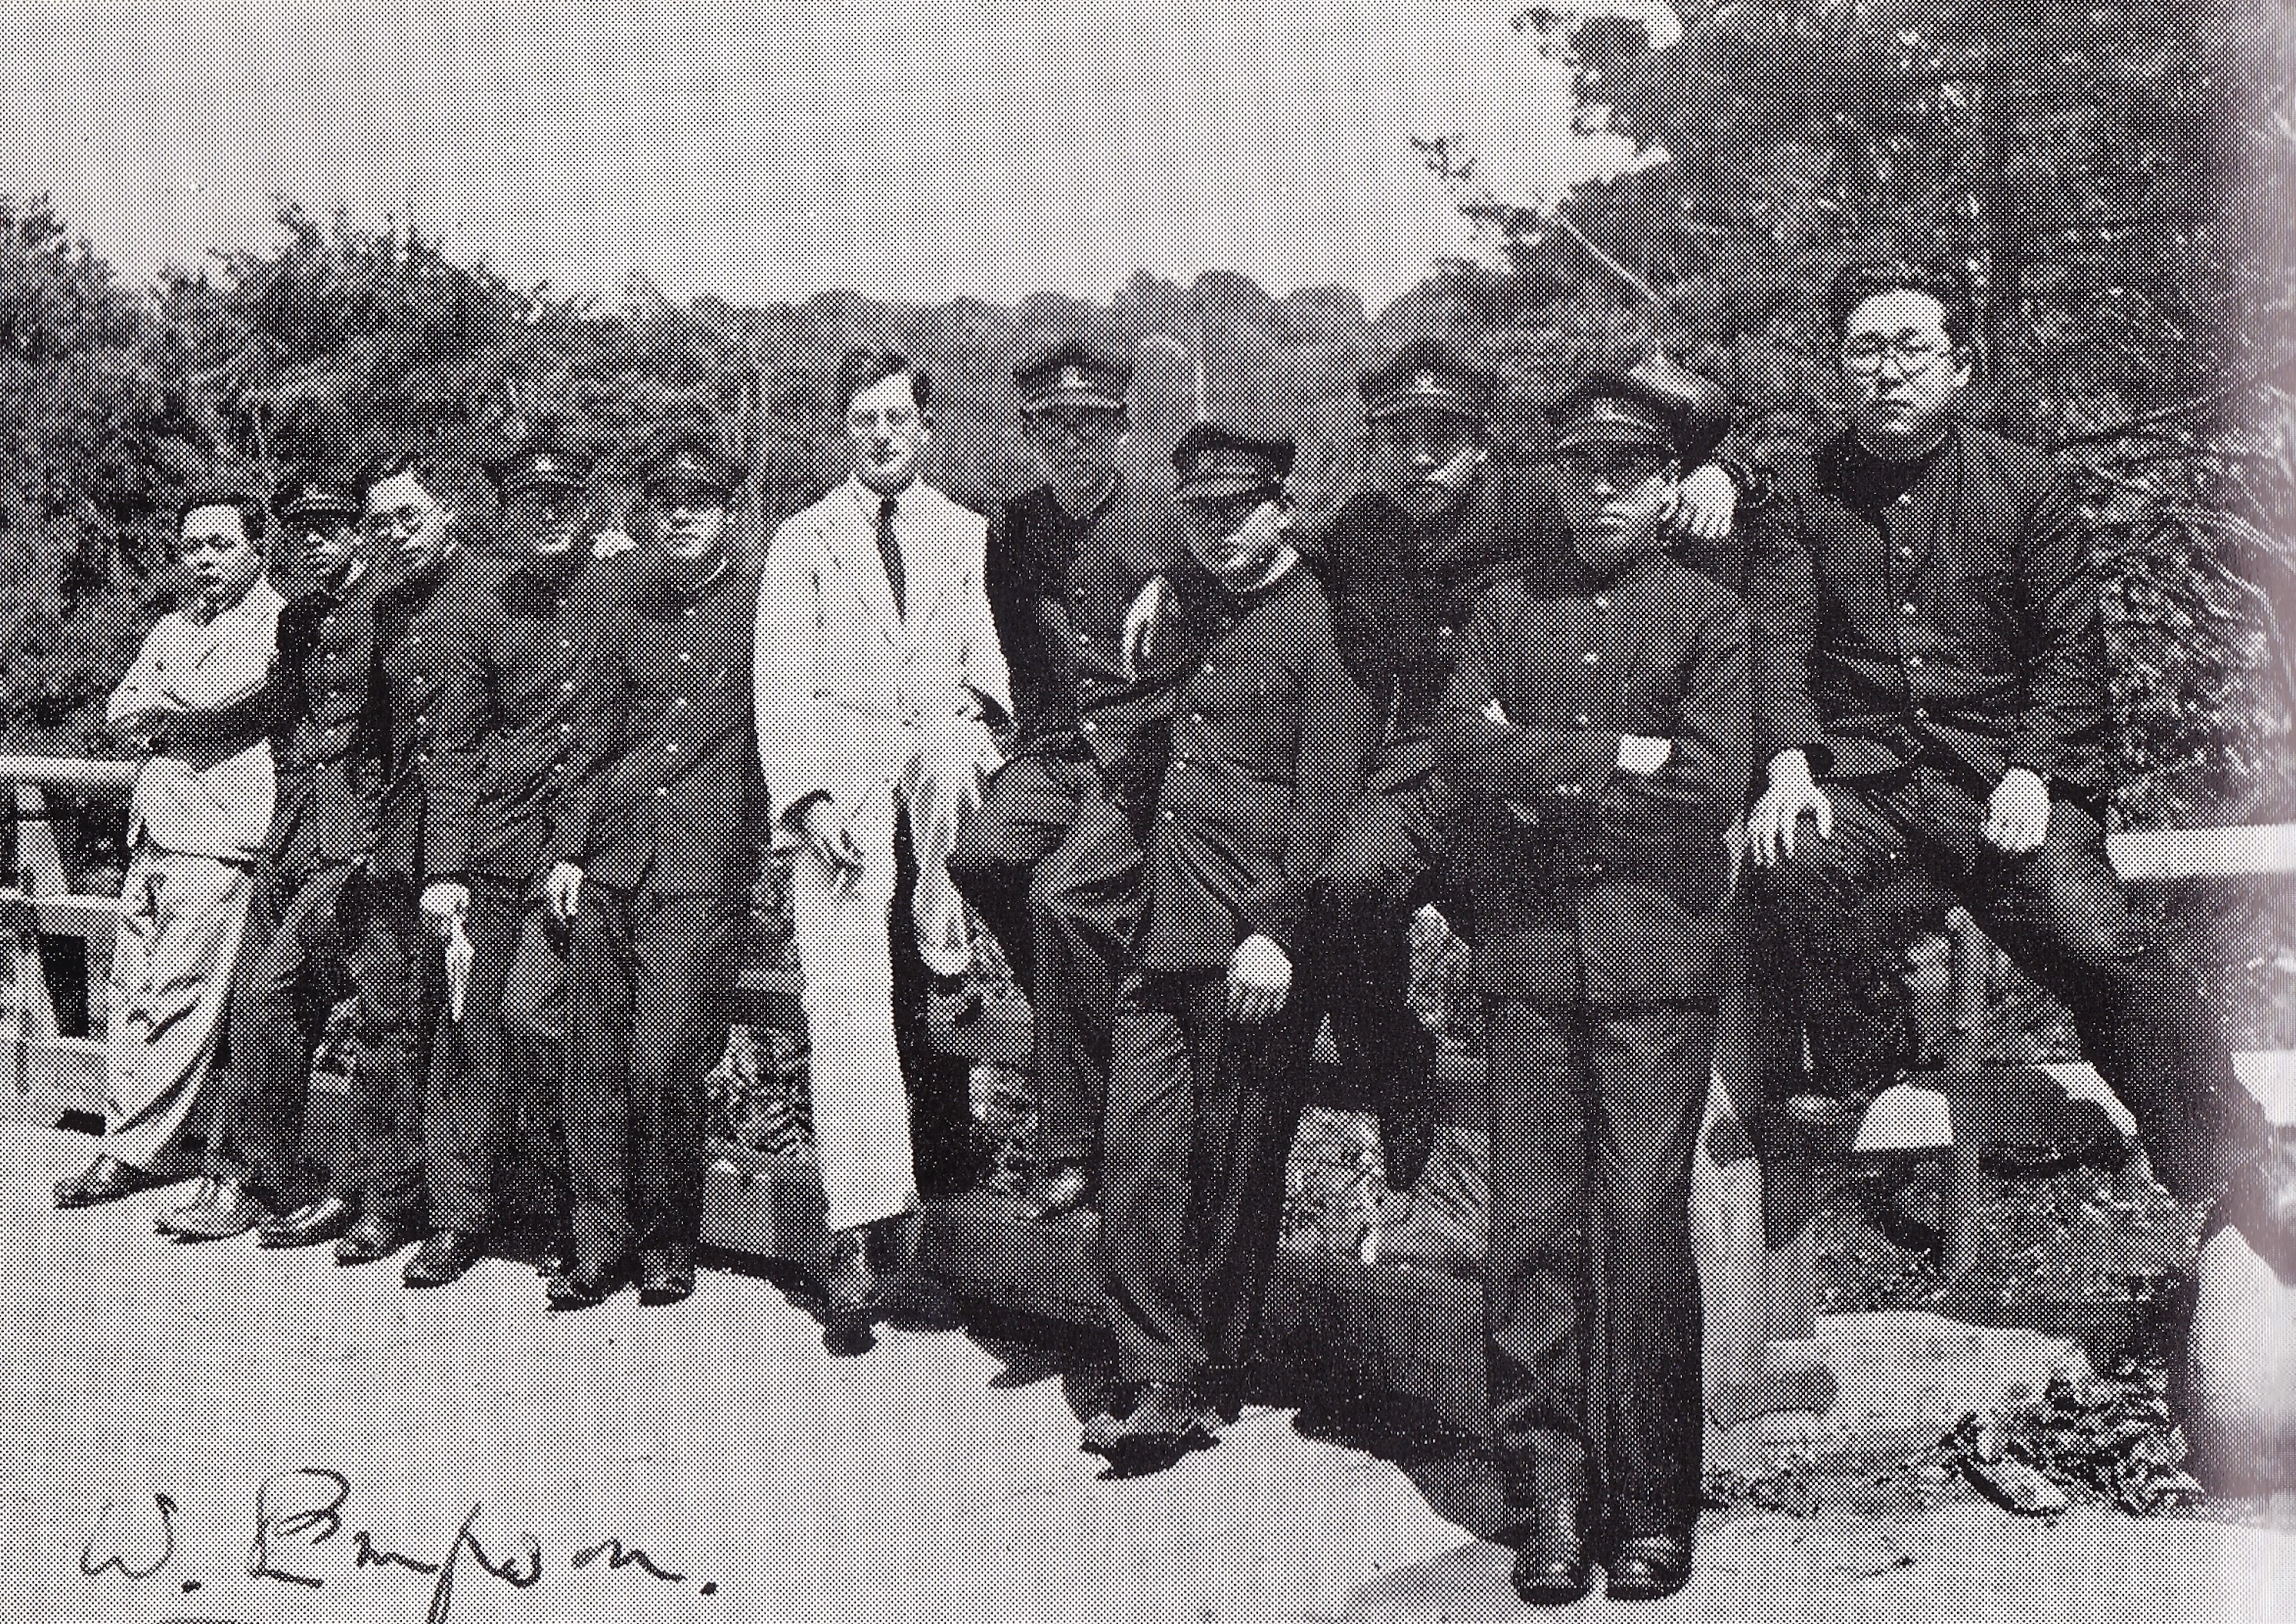 威廉·燕卜荪与东京文理科大学学生的合照。当时大概是1932年，地点为占春园，位于今天东京的文京区的庭园内。图片的背景是文理科大学的校园内，燕卜荪的最左边分别是他的同事和朋友福原麟太郎。我们有幸获得研究社的许可，从福原的选集之中重印这张图片（参考『英文学評論』/『福原麟太郎著作集』10 (東京：研究社, 1969)）(图片由尤伊克.大卫/武田香乃提供)